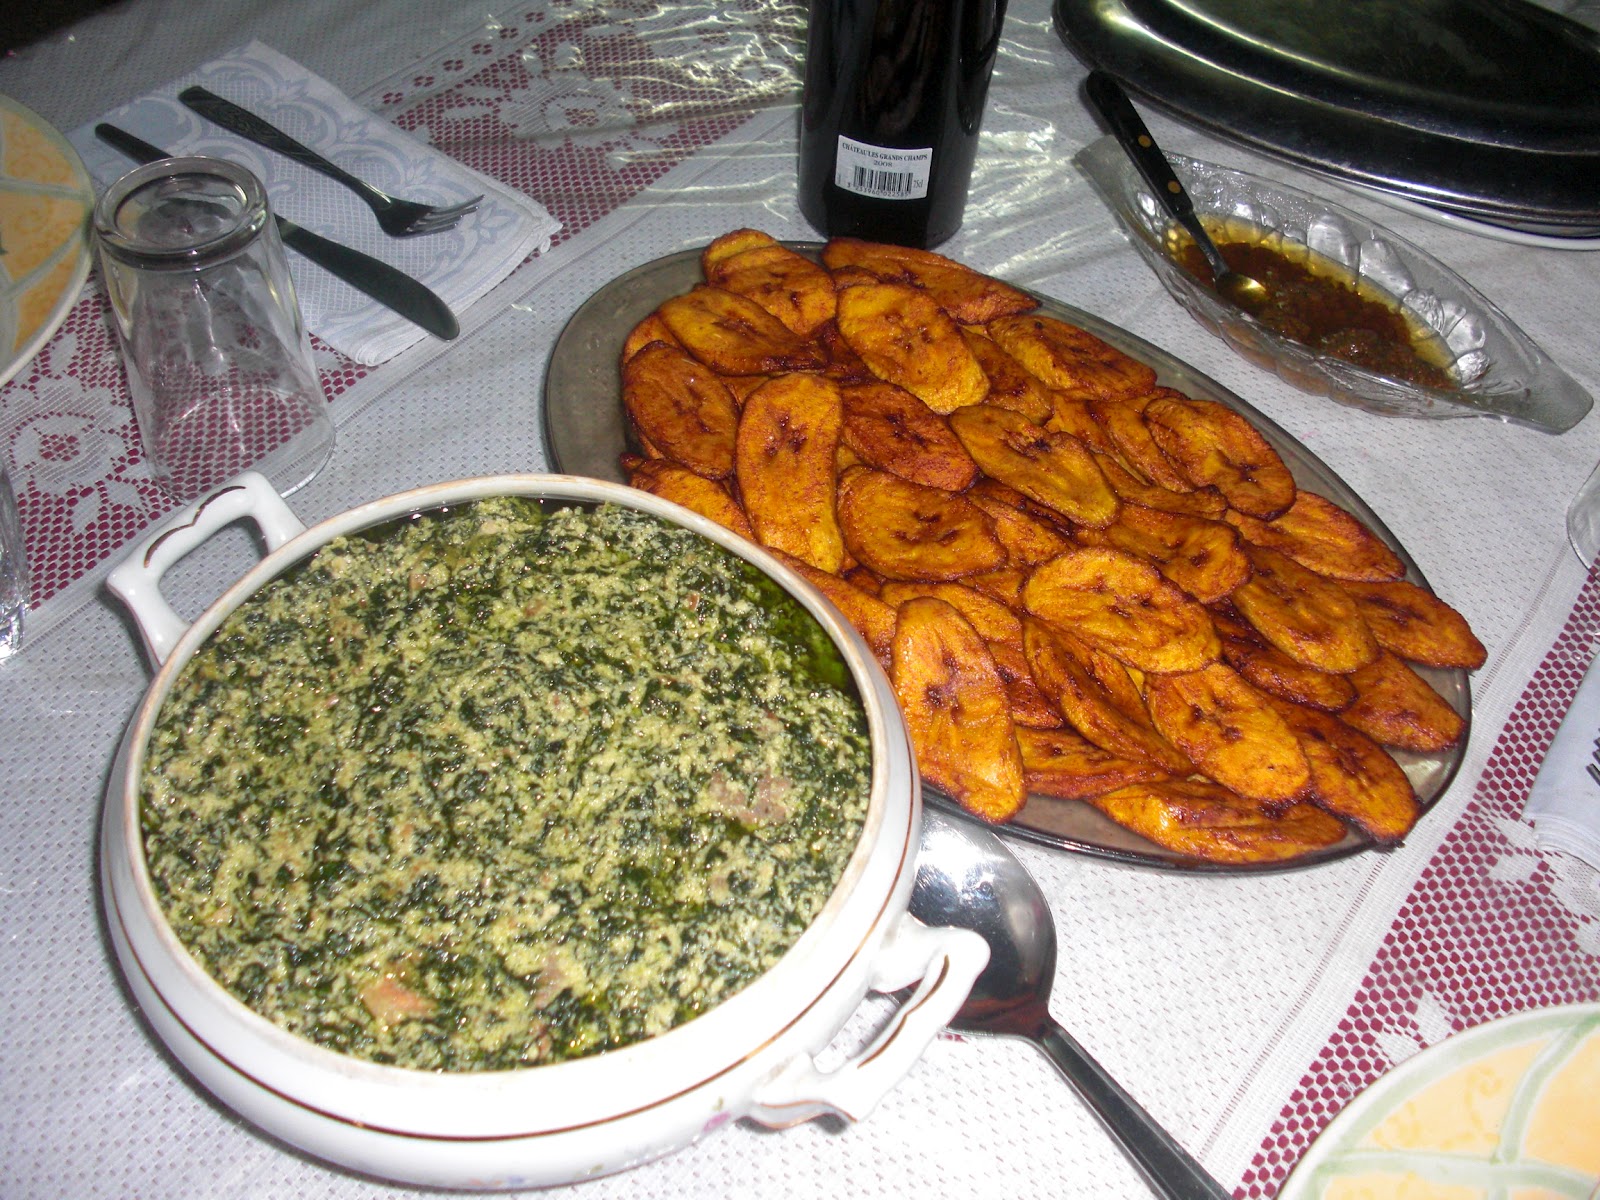 Cameroon Food